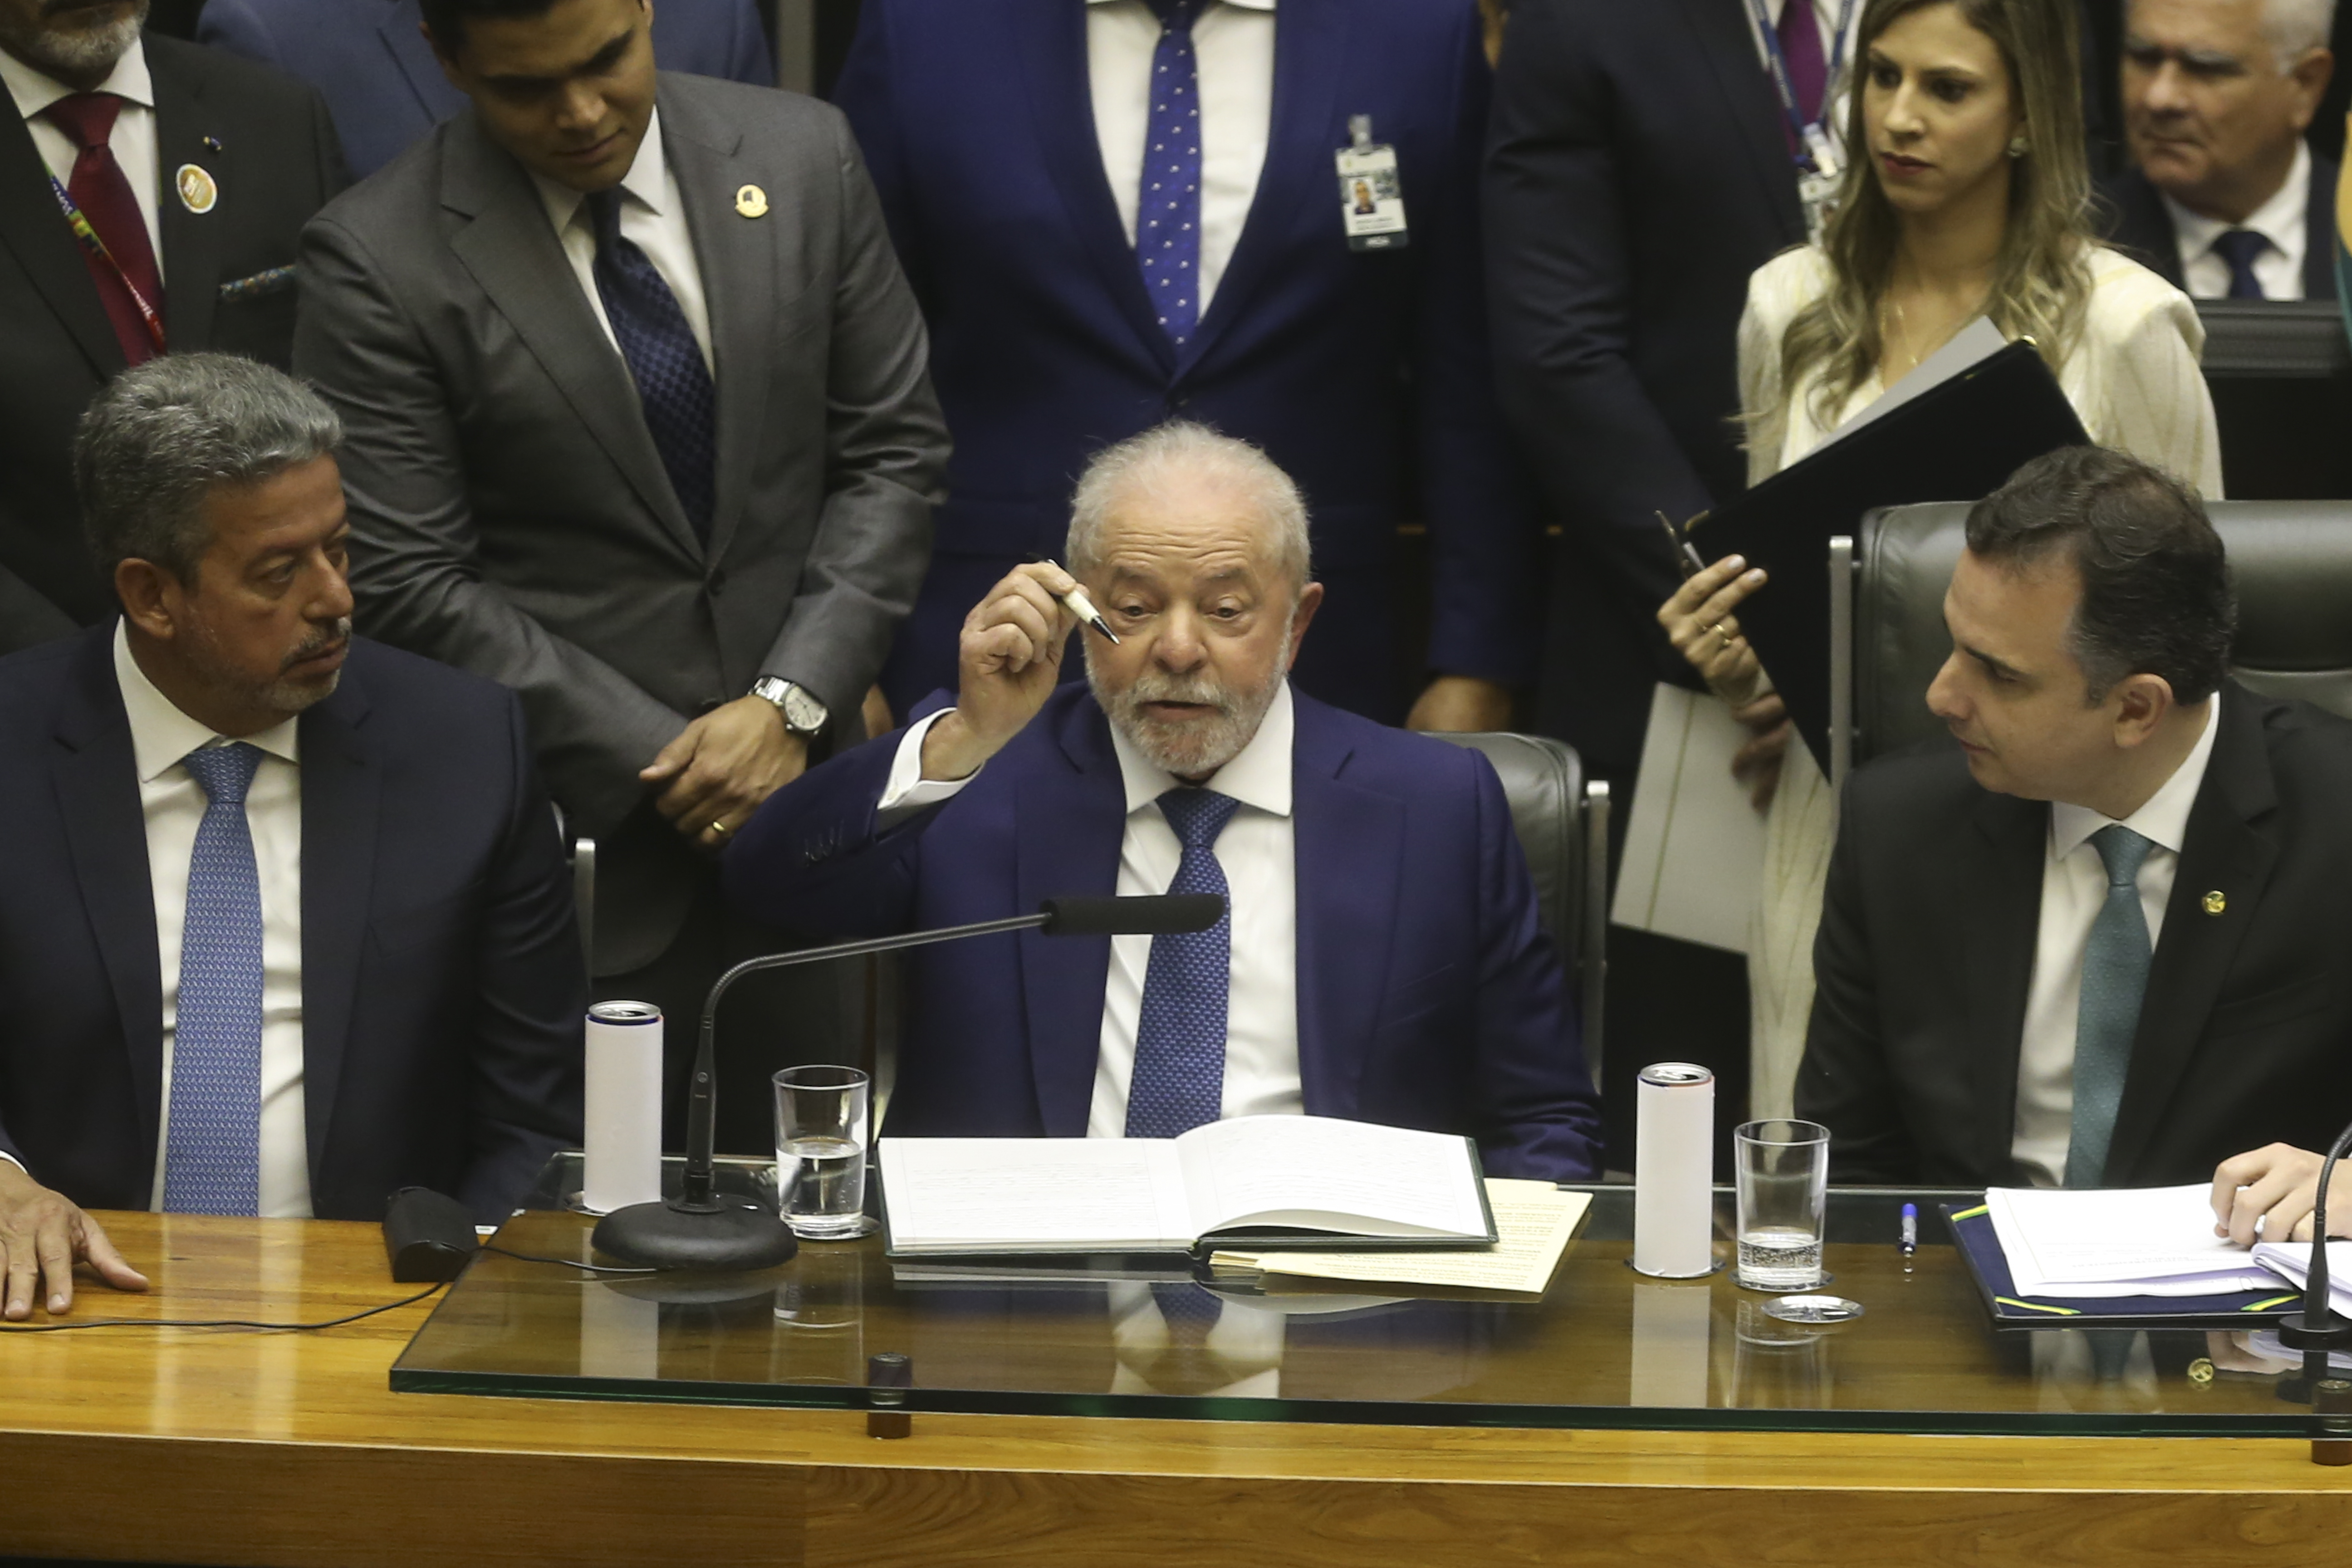 Como prometido durante a campanha, o novo presidente do Brasil, Luiz Inácio Lula da Silva, revogou várias medidas do antigo presidente que saiu do país antes de terminar o mandato